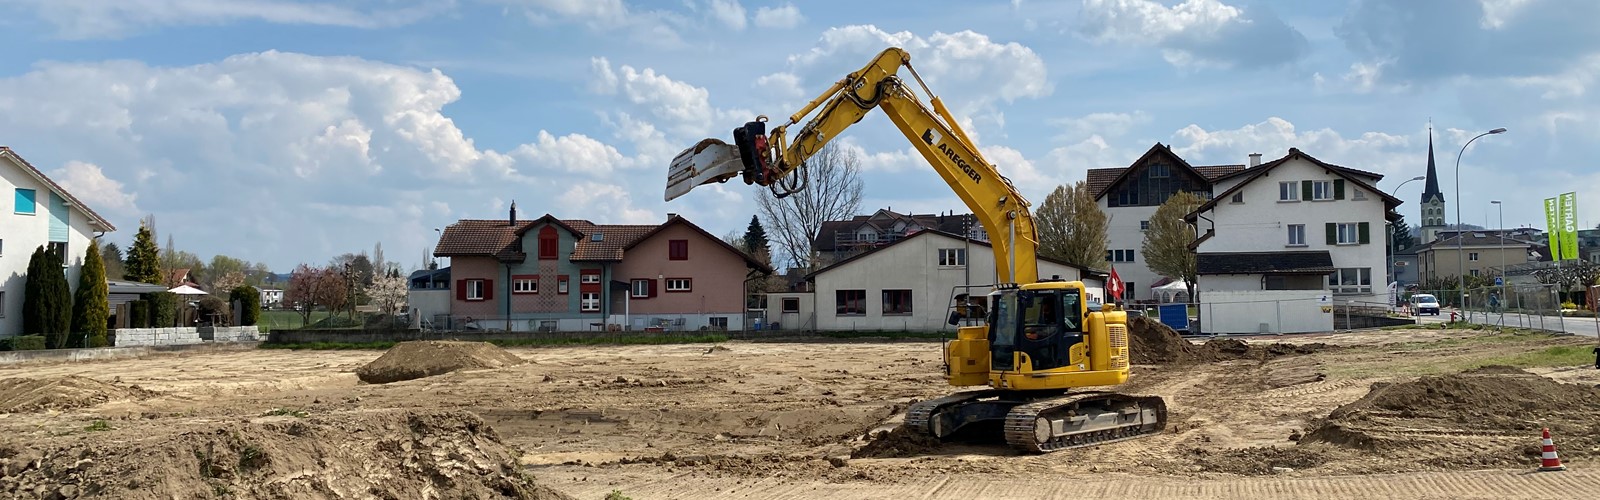 Baubeginn auf dem Säntbachareal in Schötz